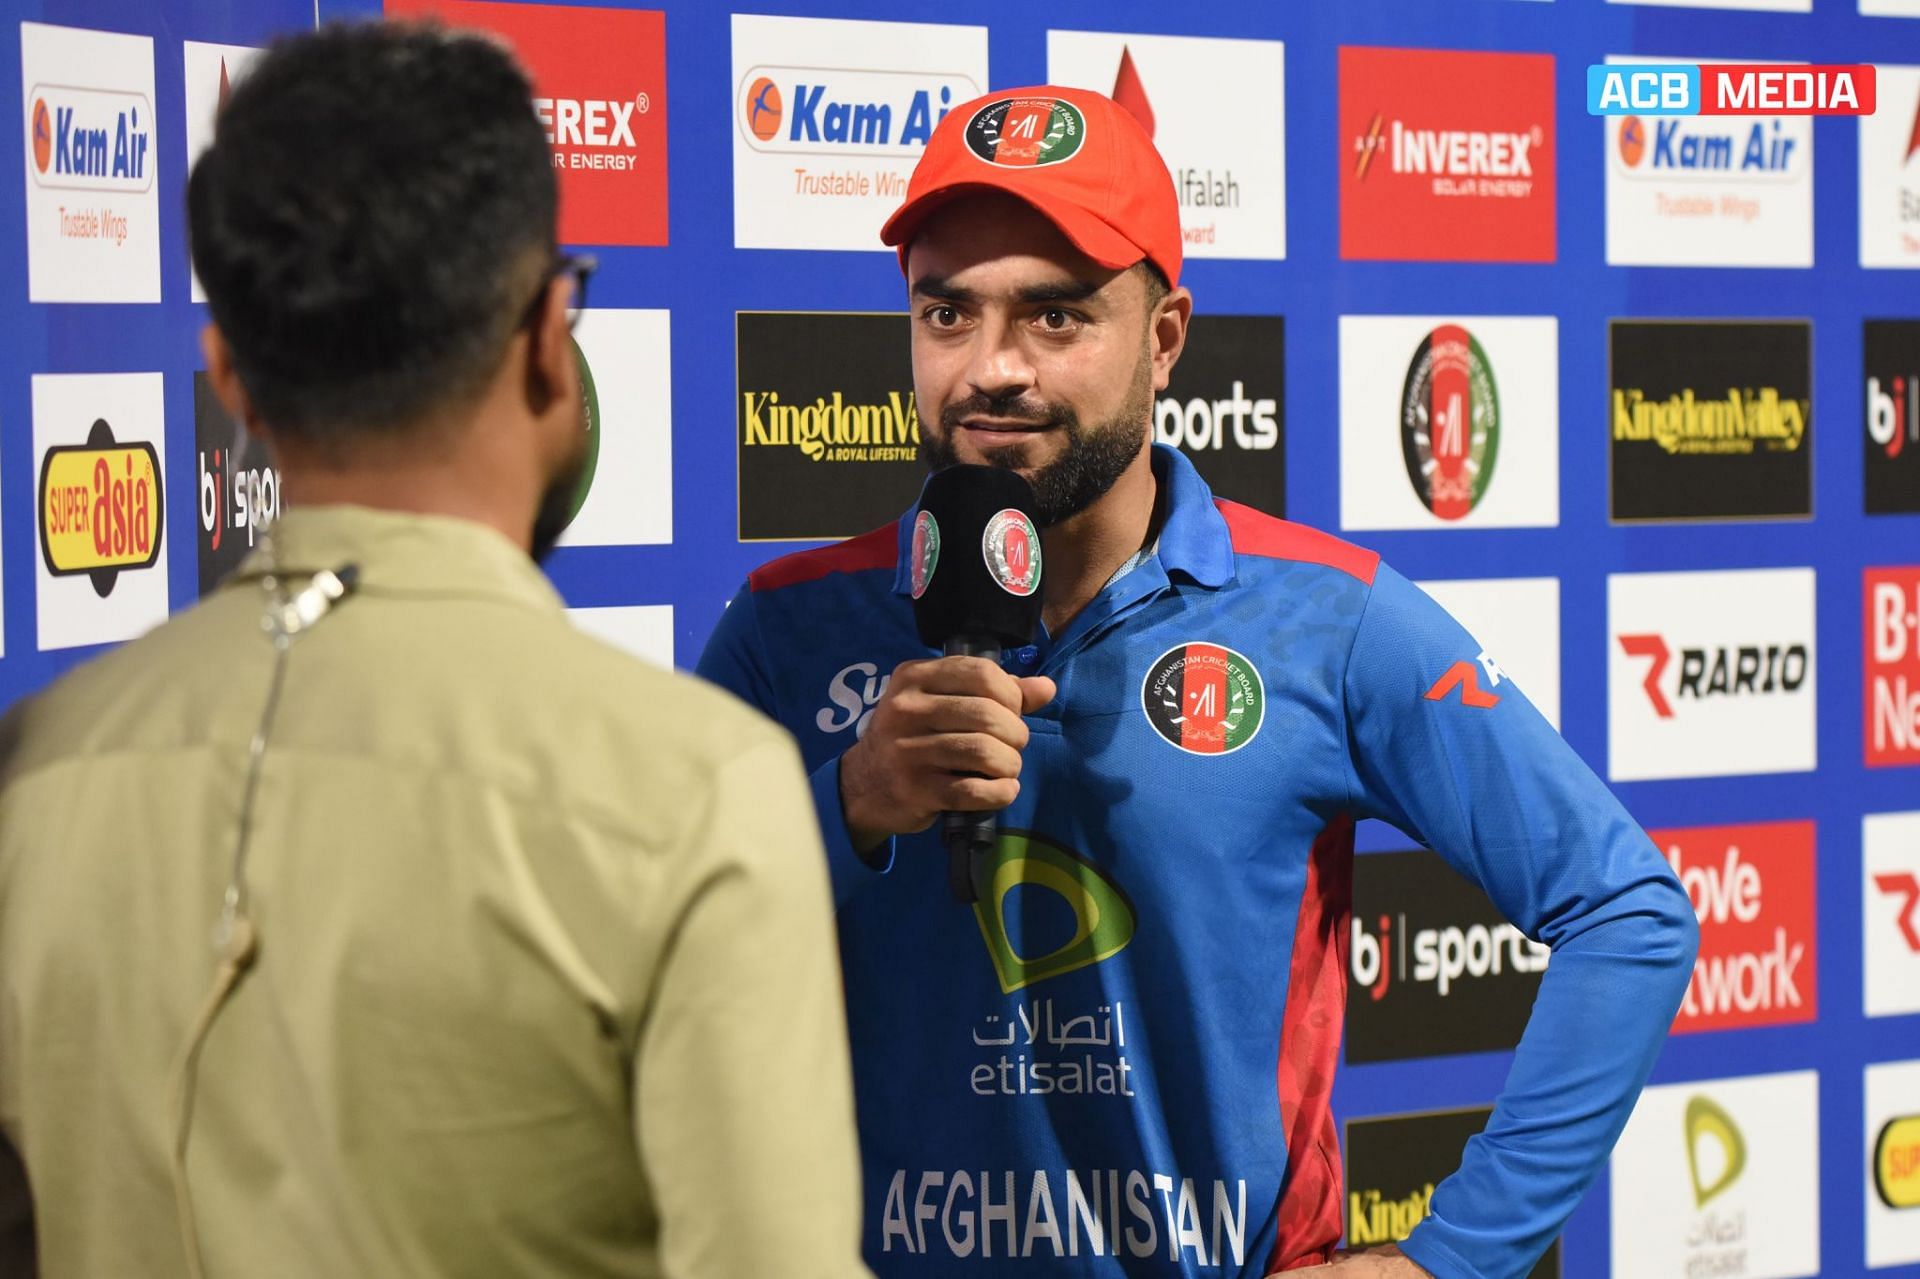 राशिद खान मैच के बाद (Photo Credit - ACB Media)